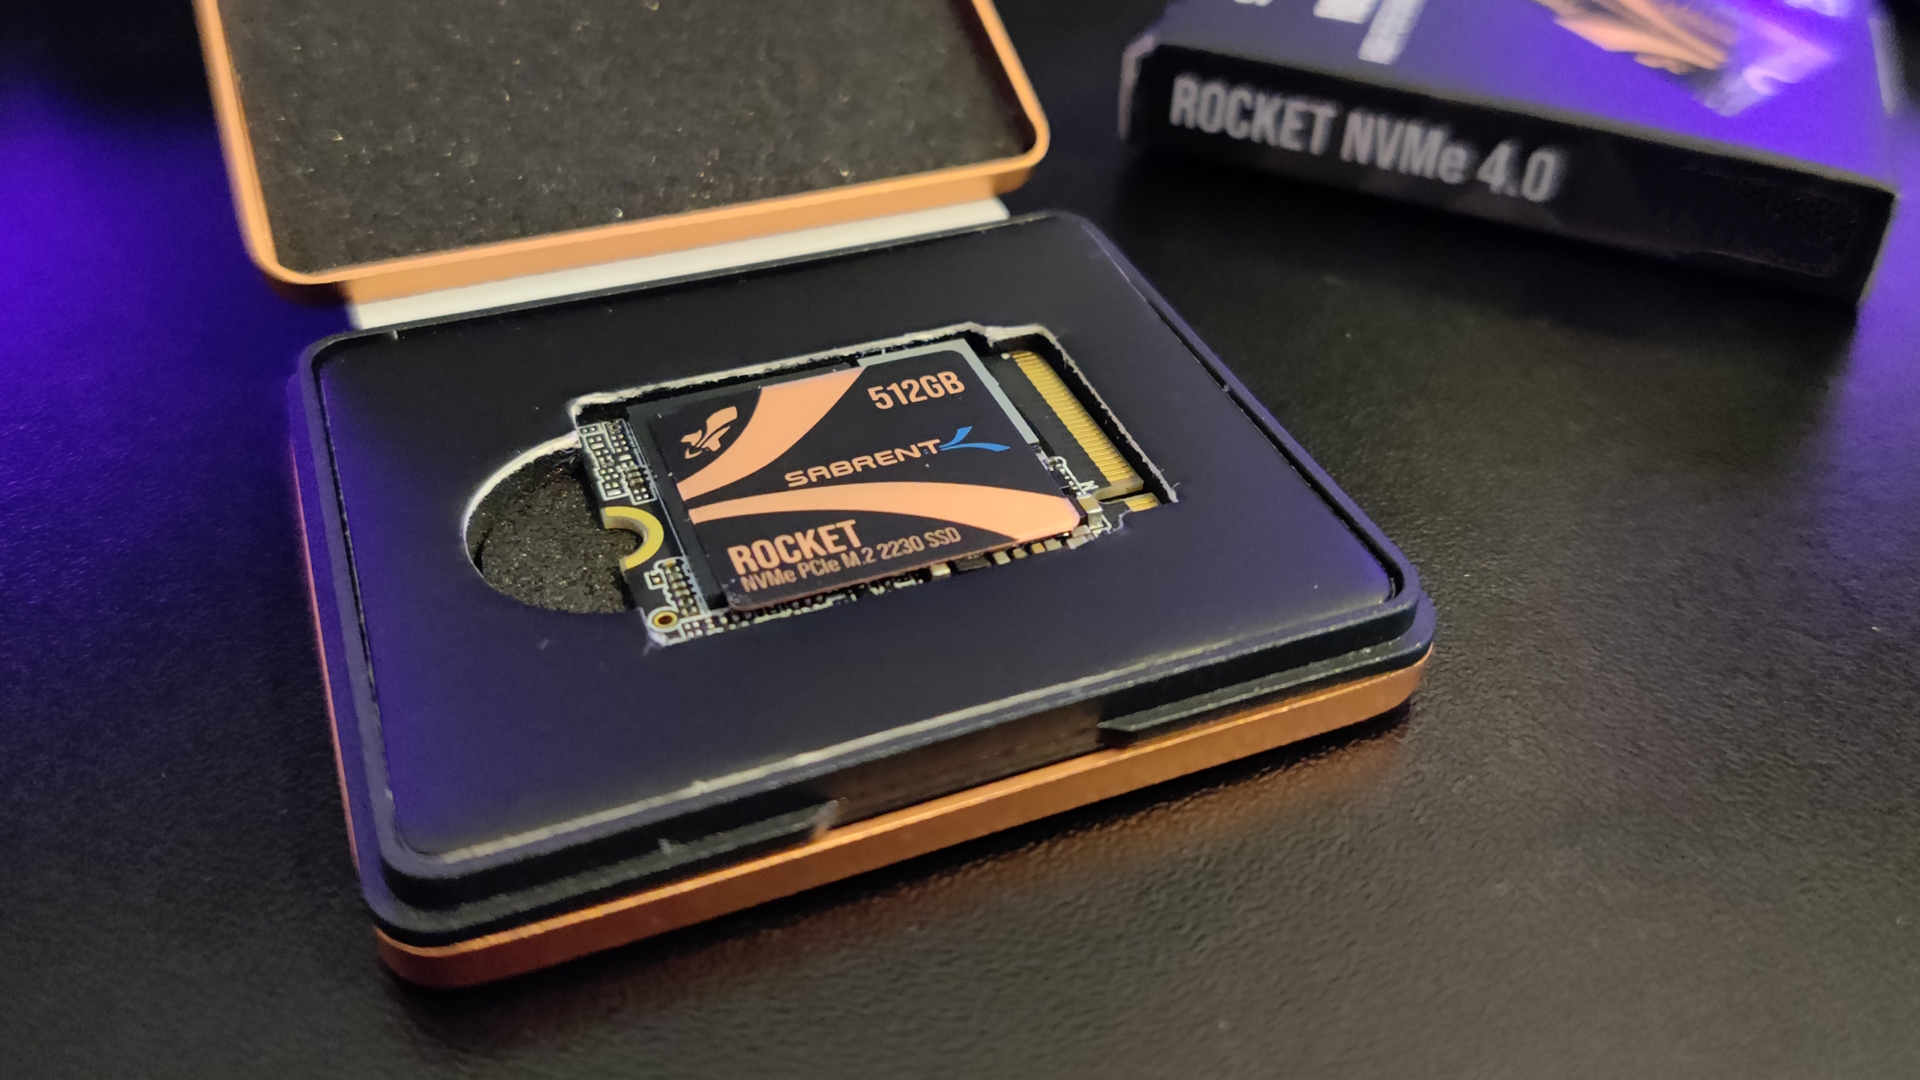 Rocket NVMe 4.0 SSD - Sabrent